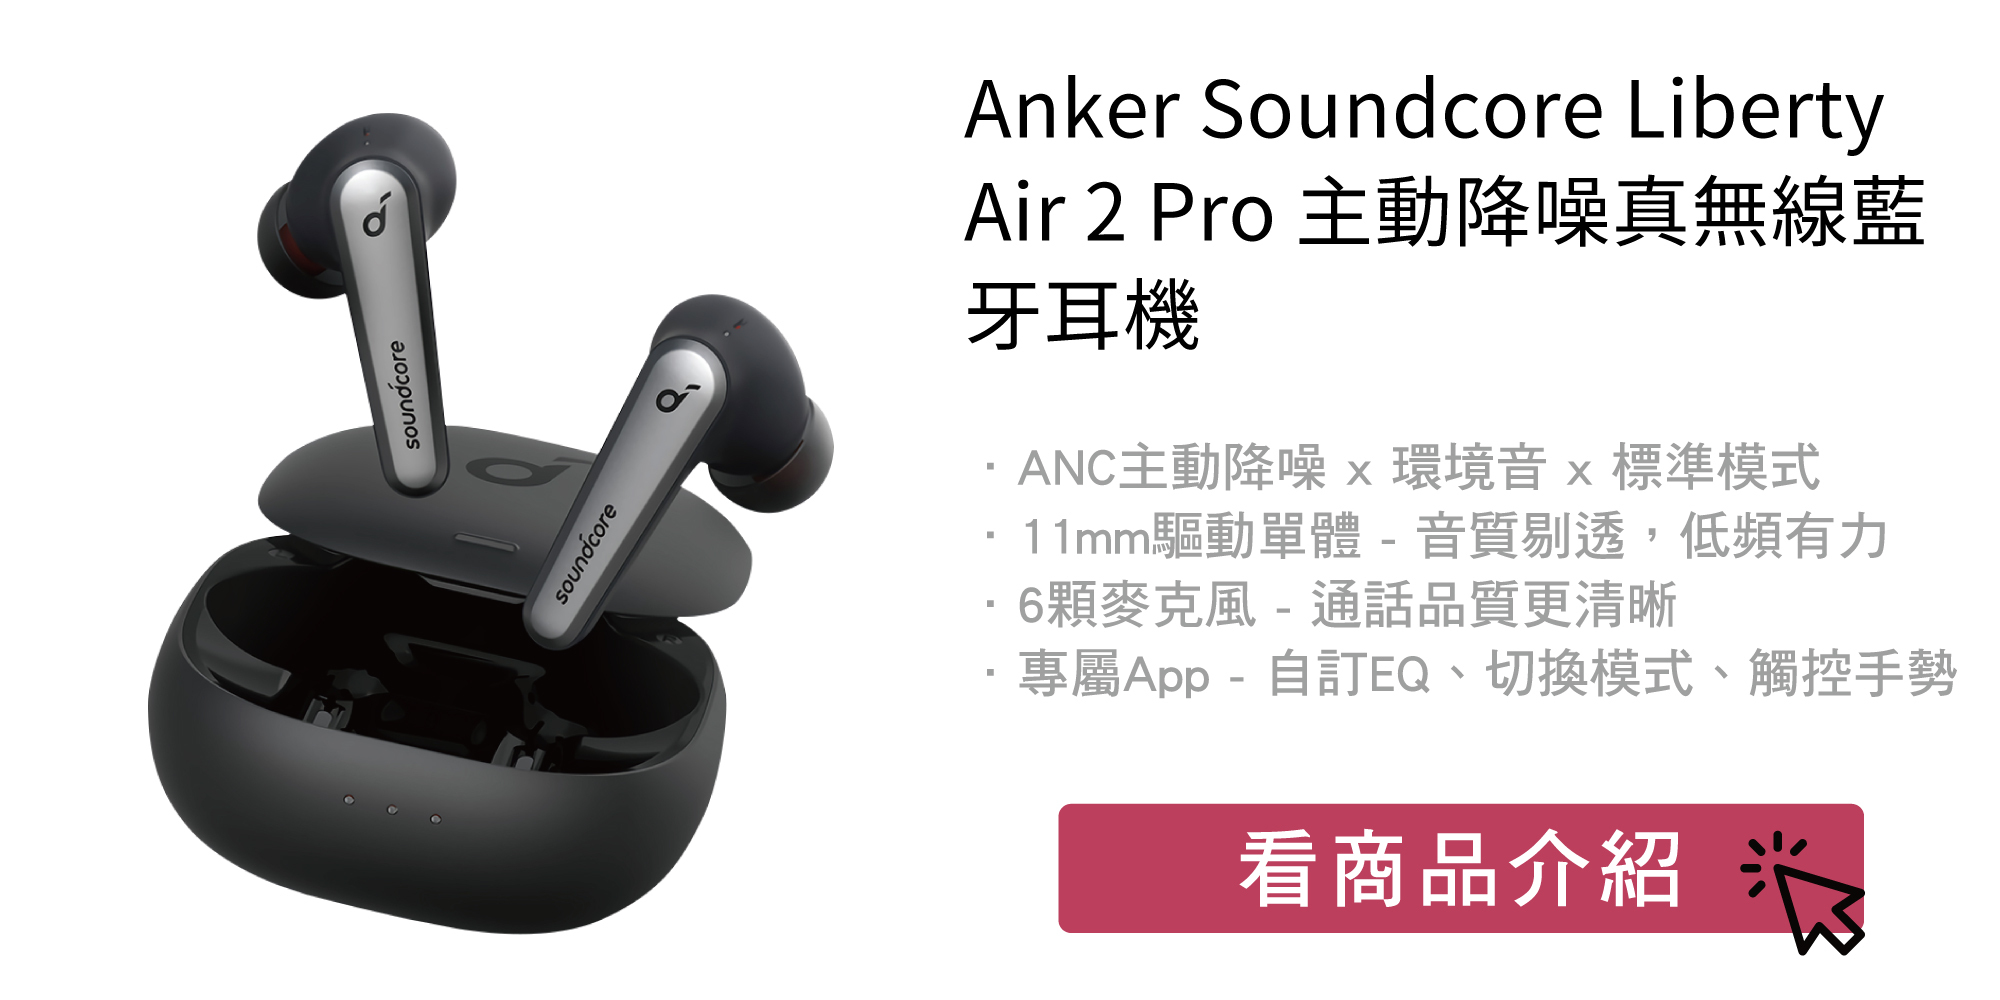 開箱評測】解答你最想知道ANKER Soundcore Liberty Air 2 Pro的四大疑問